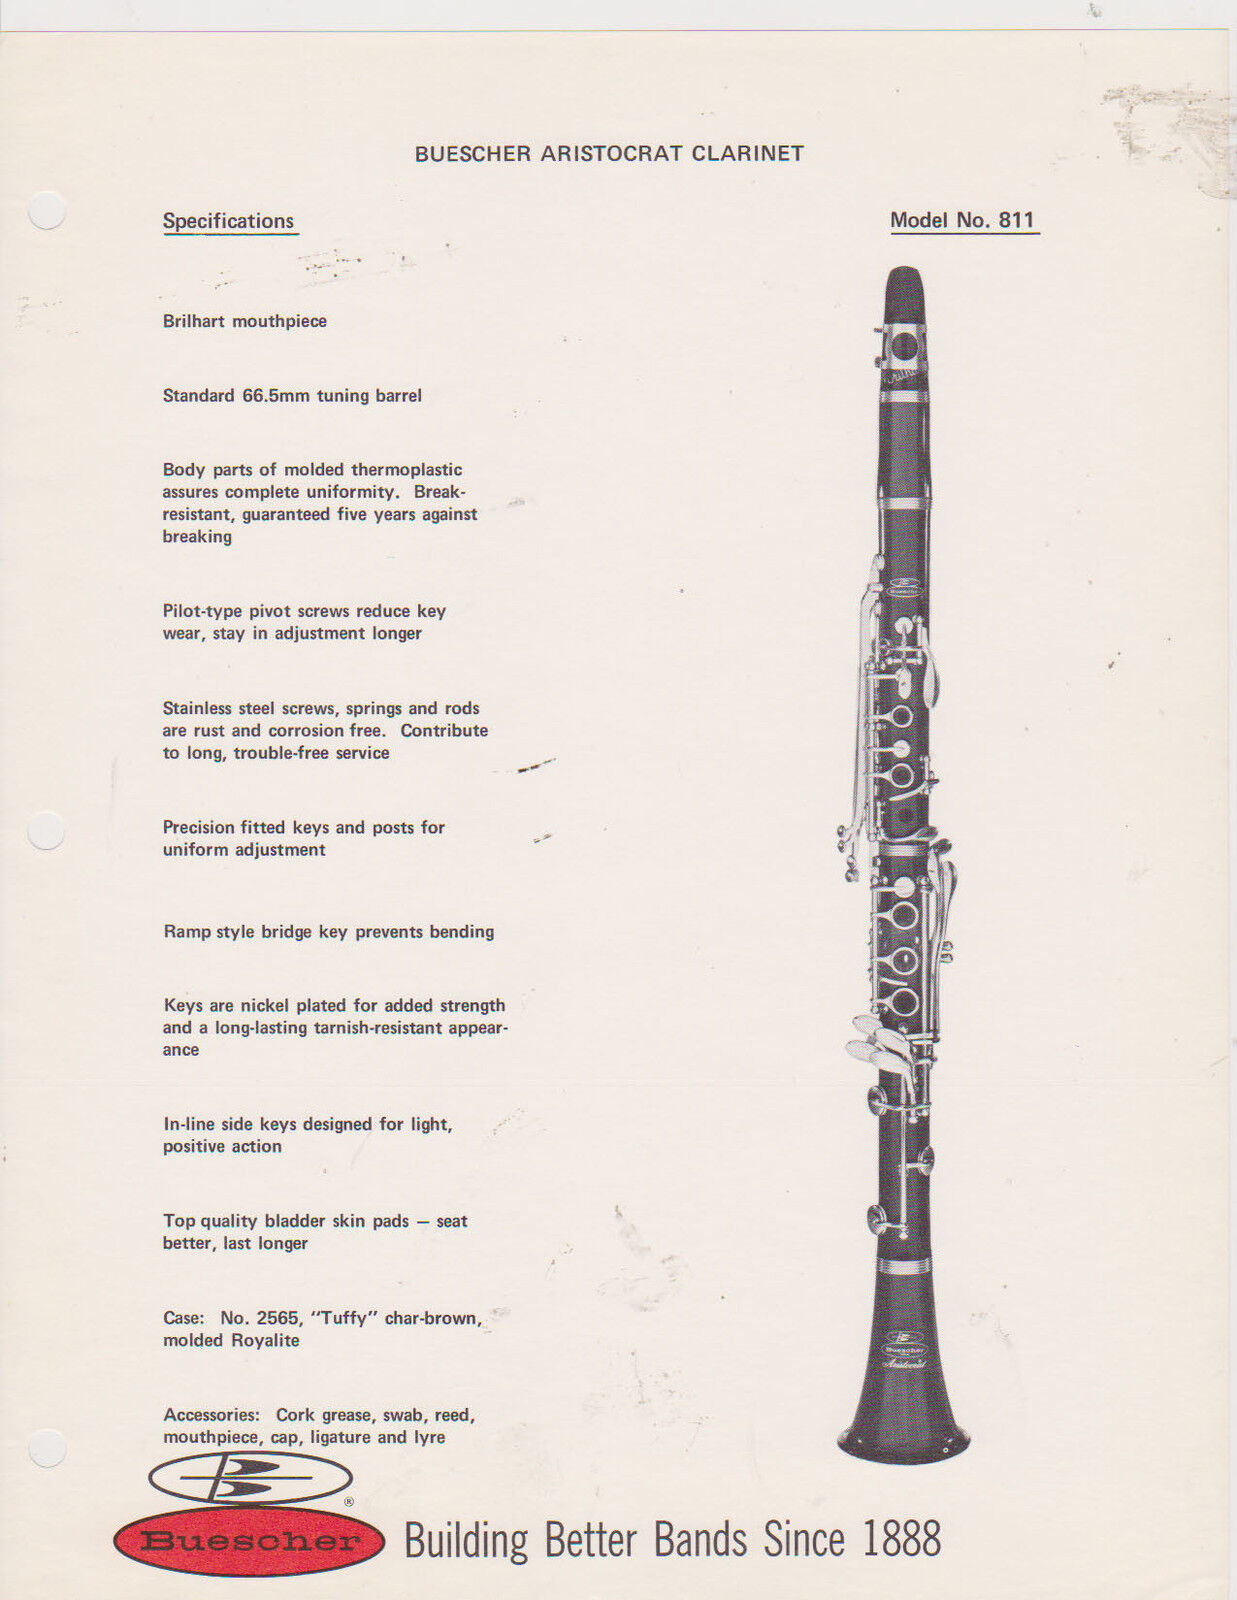 AD SHEET #2532 - 1970s BUESCHER MUSICAL INSTRUMENT - ARISTOCRAT CLARINET #811